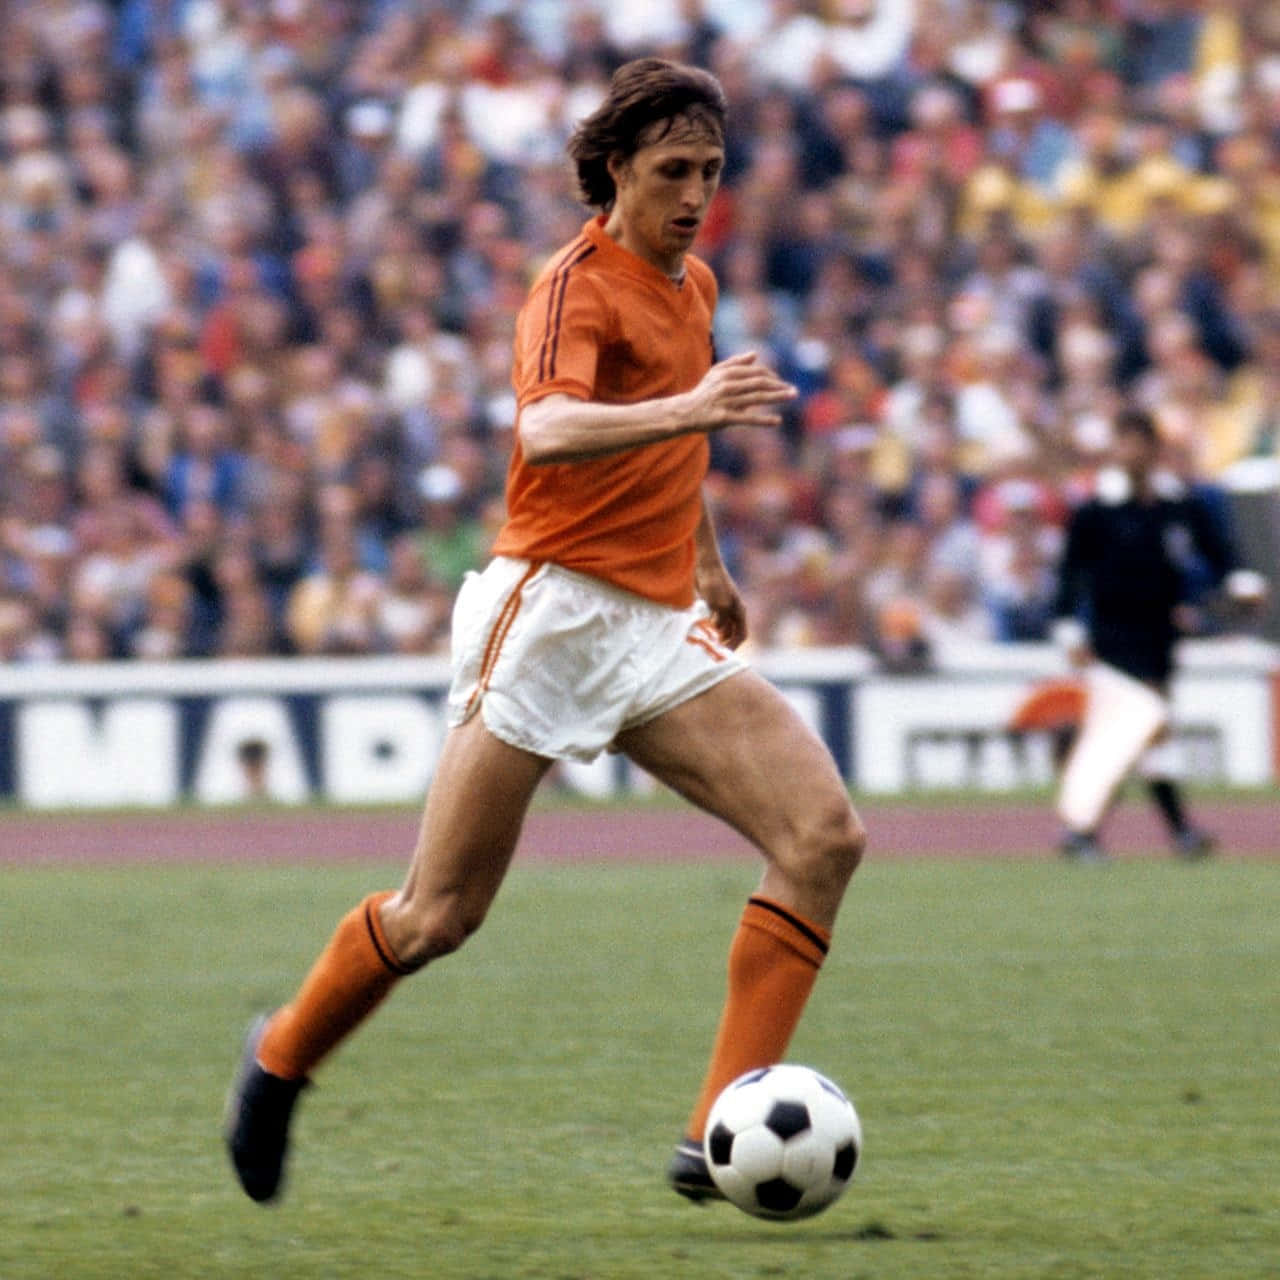 Hollandske fodboldholds kaptajn Johan Cruyff spiller fodbold Wallpaper